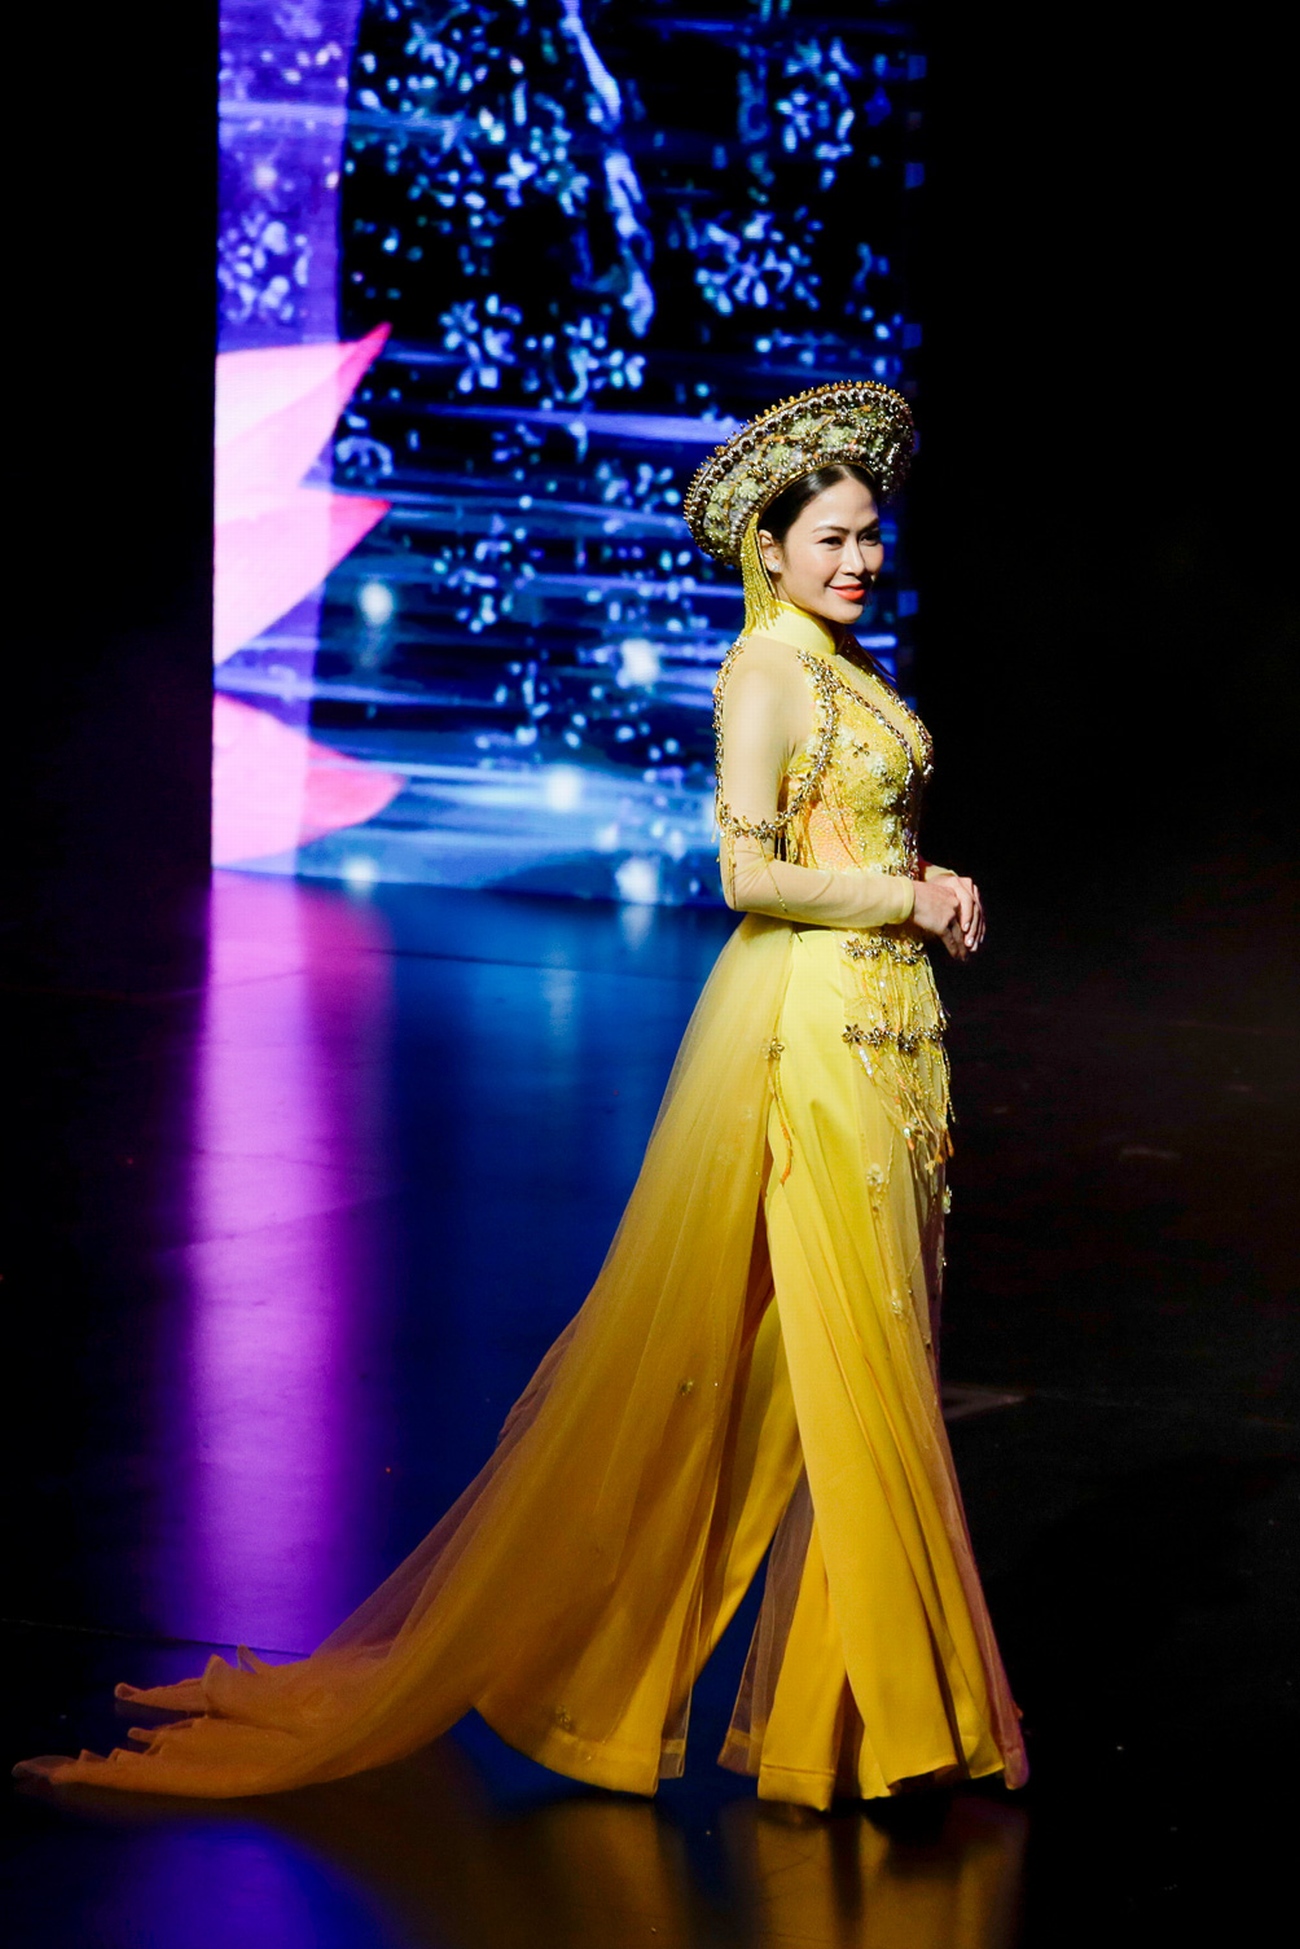 Tuyết Nga tại Hoa hậu áo dài Việt Nam 2019 được đánh giá là một trong những thí sinh nổi bật với gương mặt cuốn hút, chiều cao 1m70 